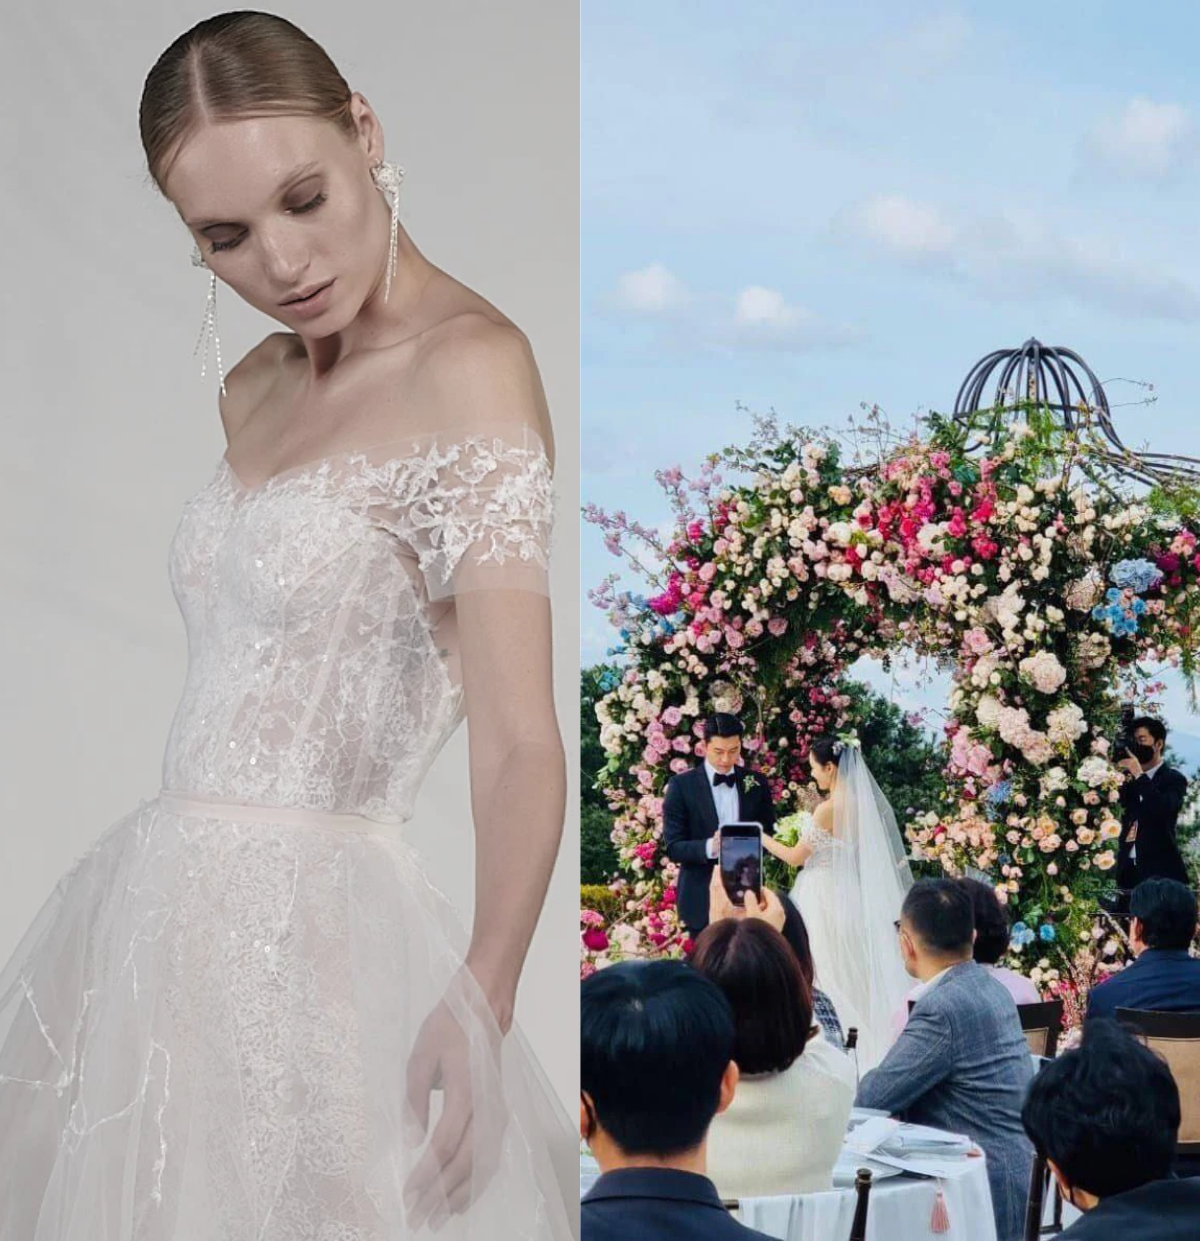 Son Ye Jin và Ngô Thanh Vân diện cùng 1 mẫu váy cưới ai đẹp hơn